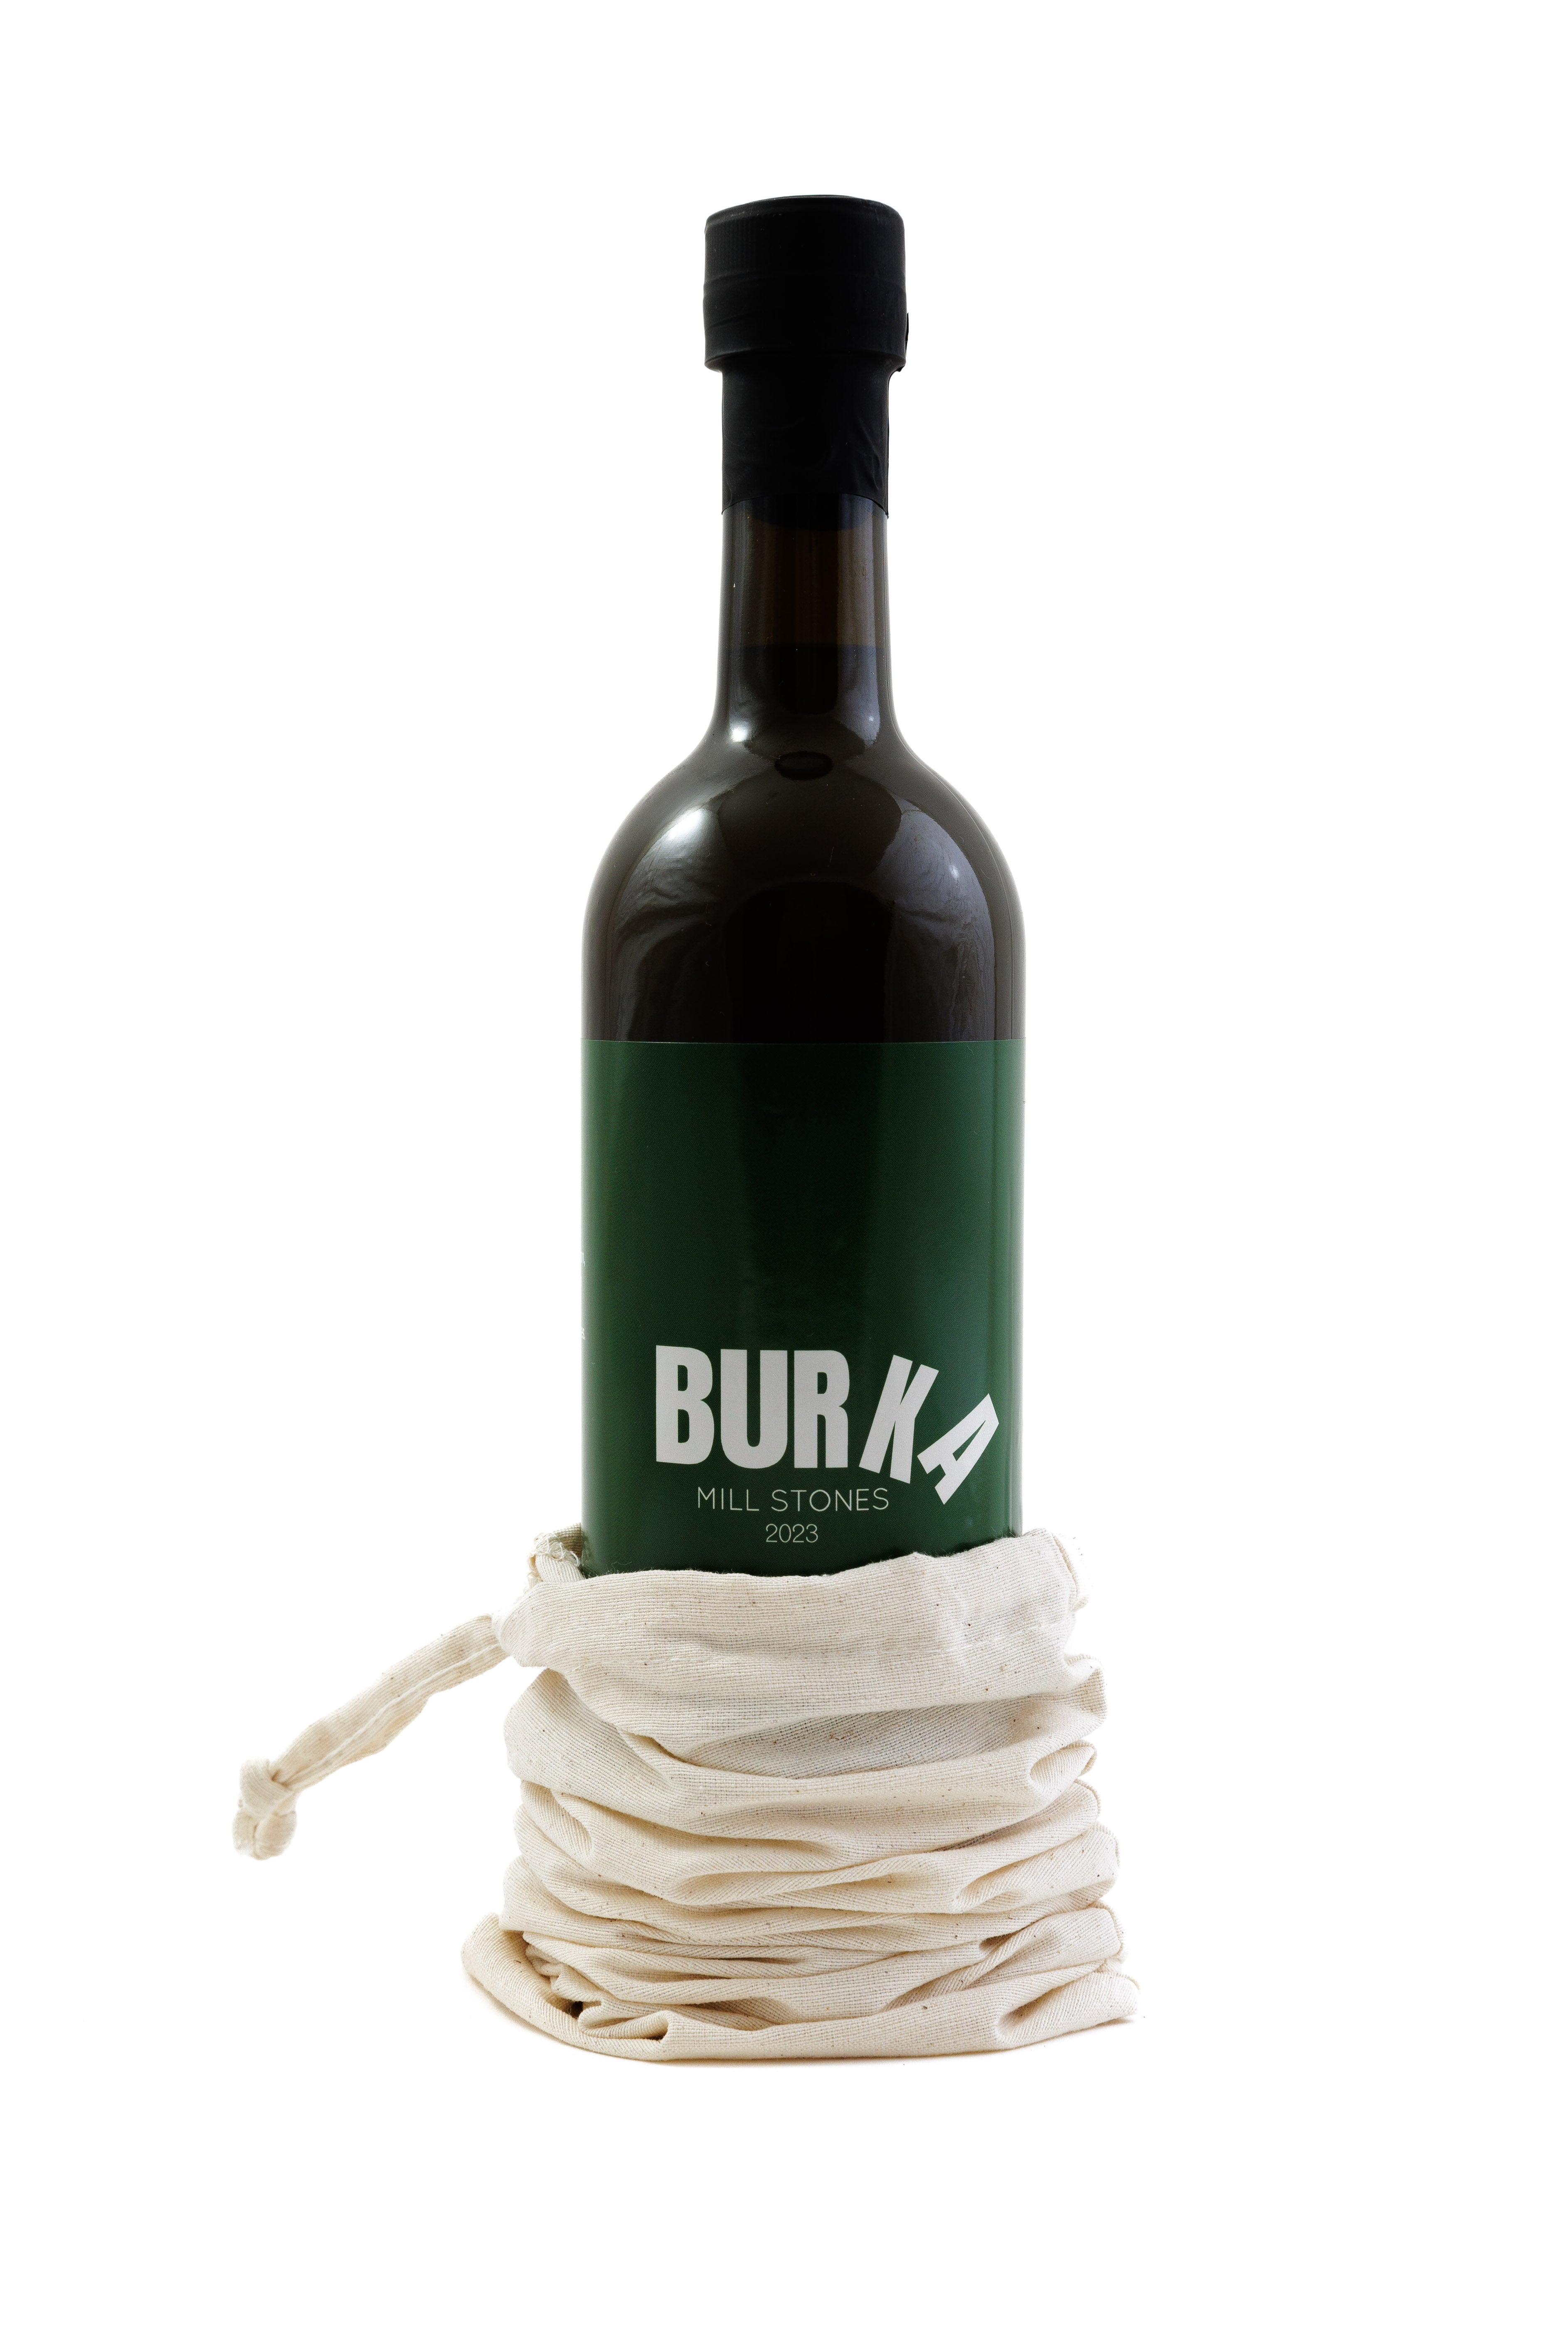 Burka's Mühlstein-extrahiertes Olivenöl – würzig, pfeffrig und kraftvoll [Erntejahr: 2023]